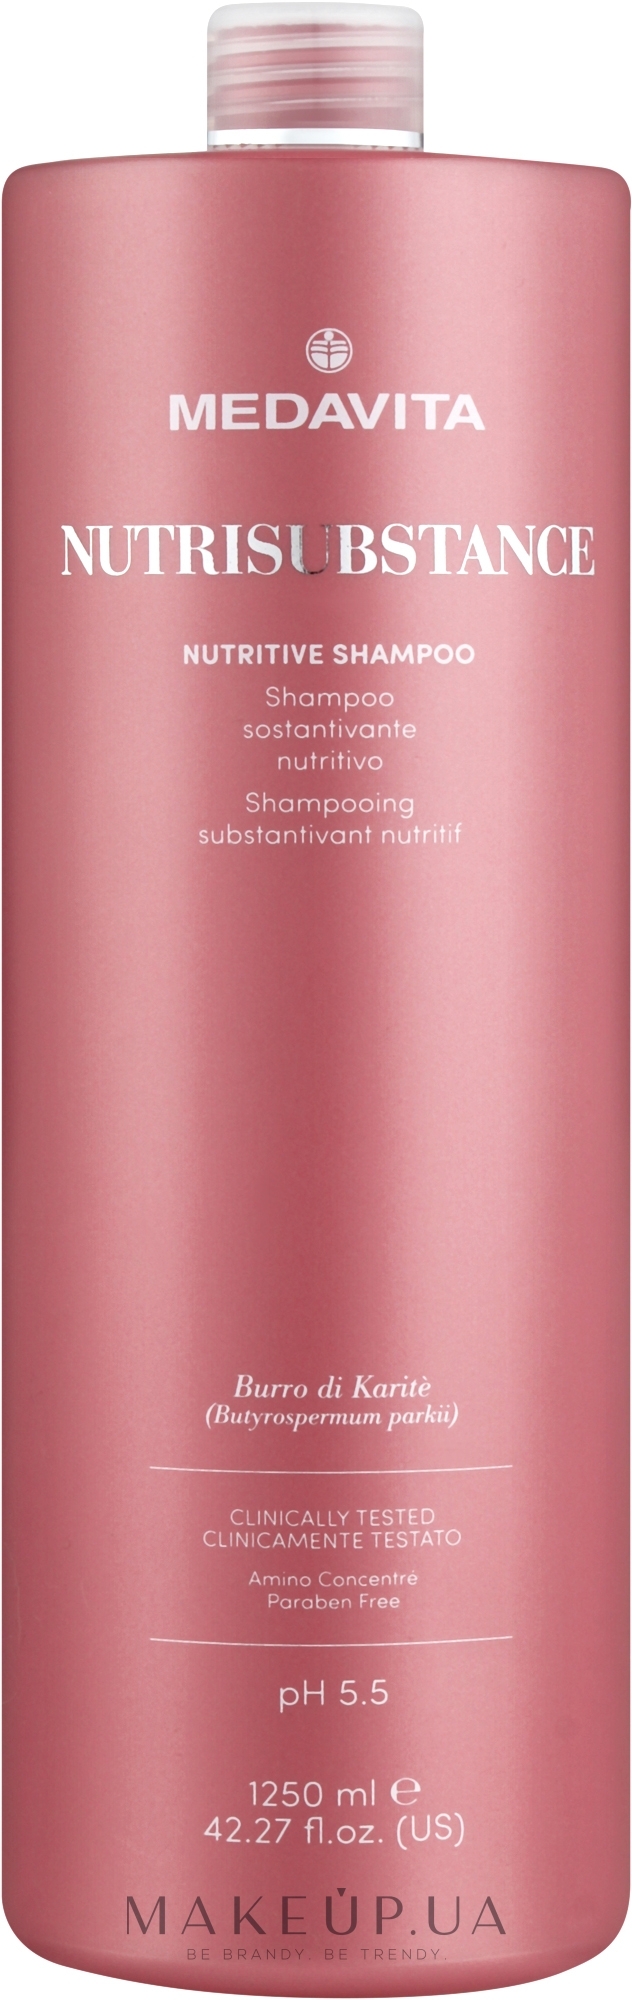 Питательный и увлажняющий шампунь для сухих волос - Medavita Nutrisubstance Nutritive Shampoo — фото 1250ml